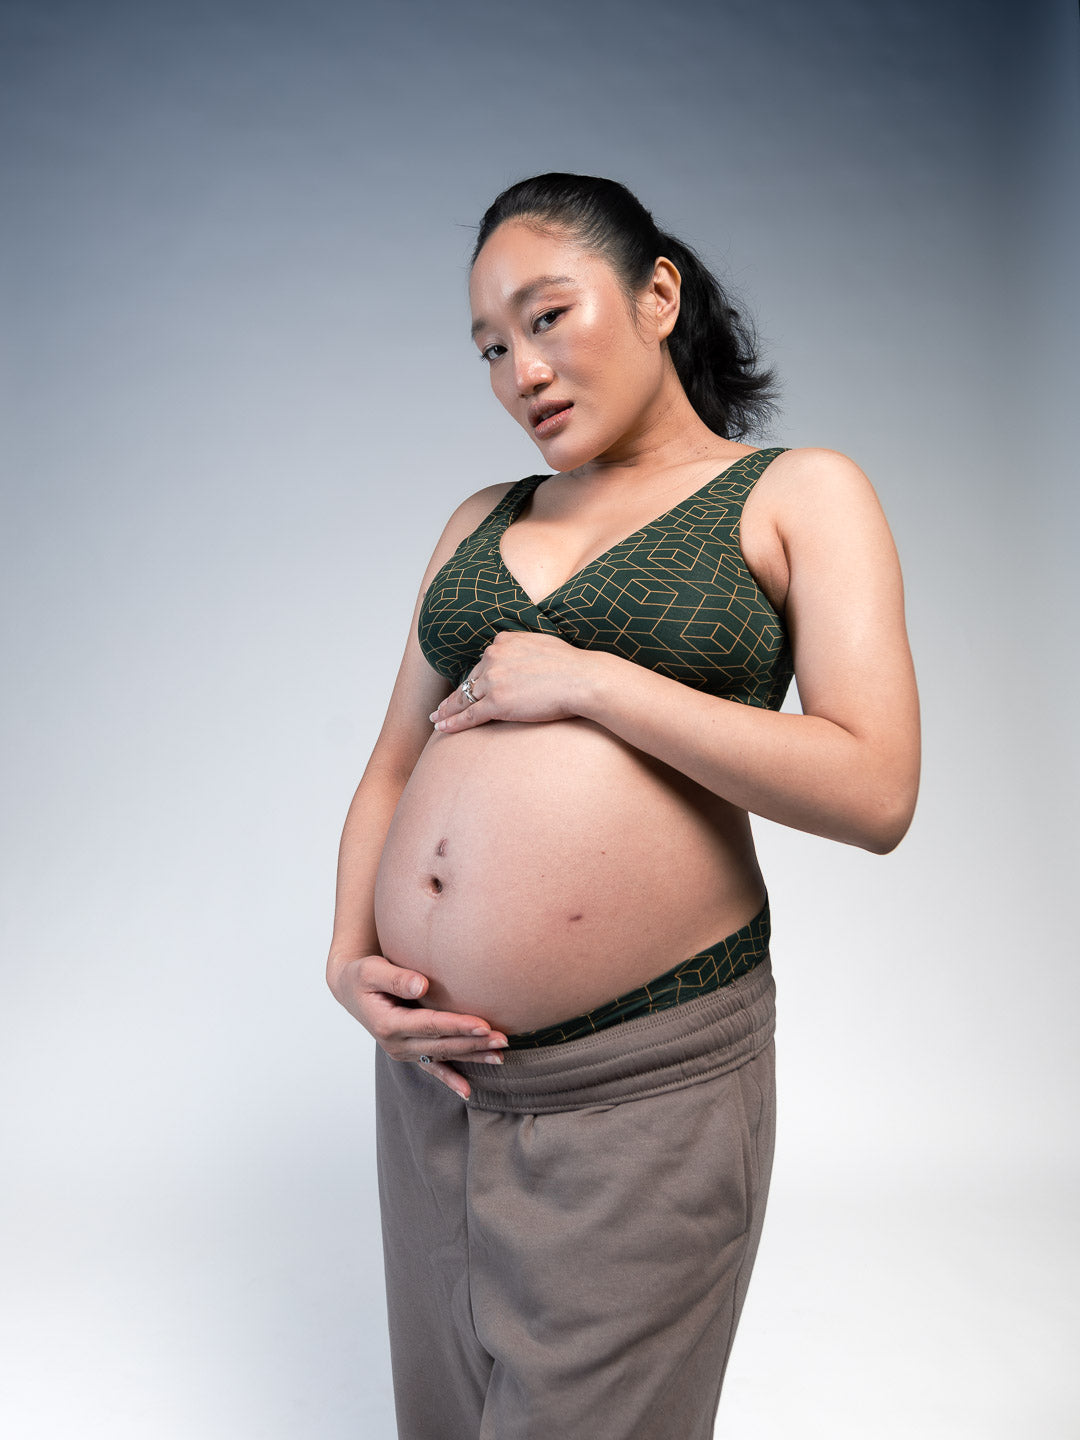 Buy Nursing Friendly Maternity Bras for New Moms Online - Tailor